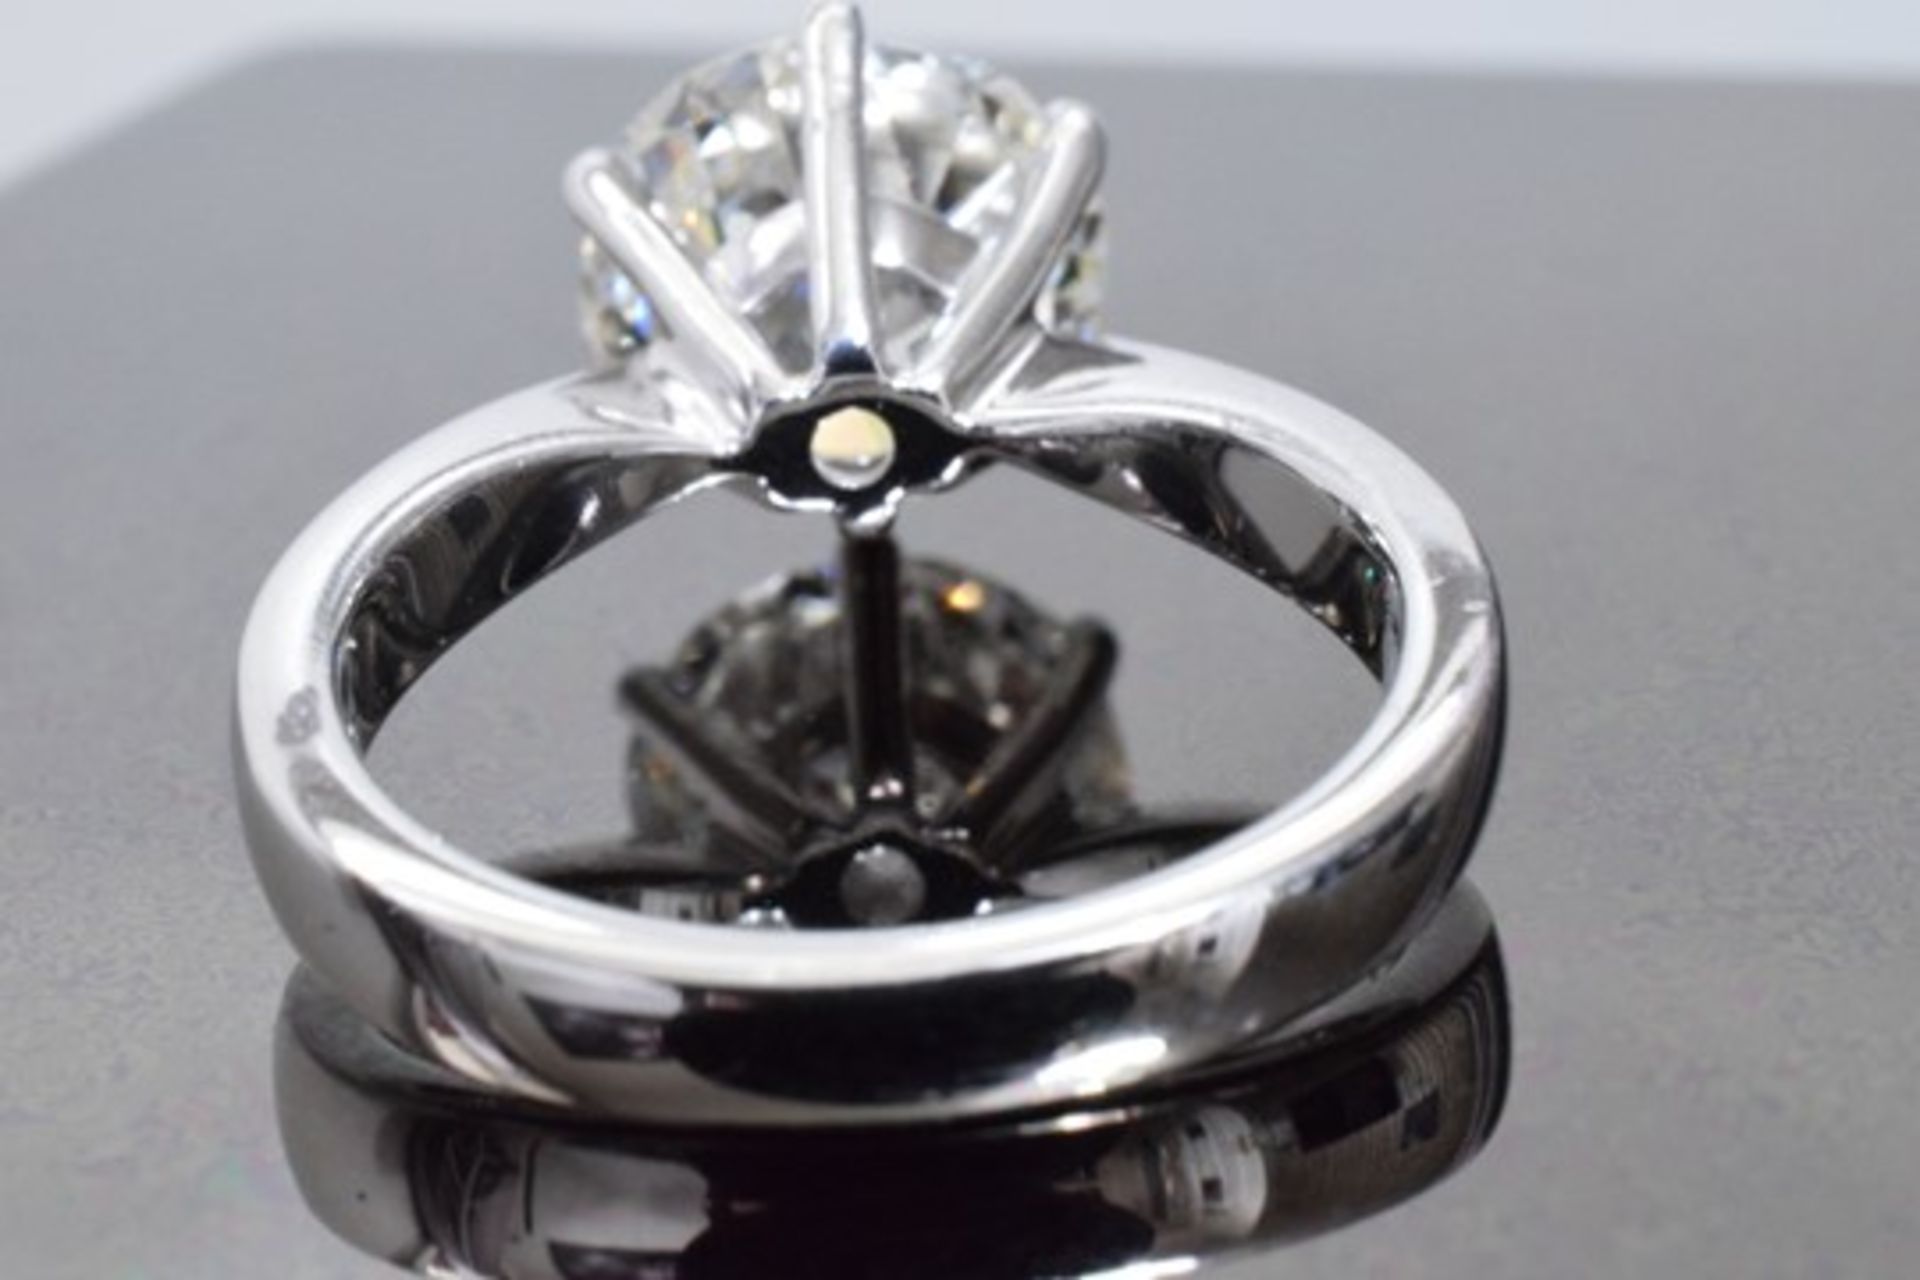 3.70 Carat Diamond Ring Set in White Gold - Image 7 of 8